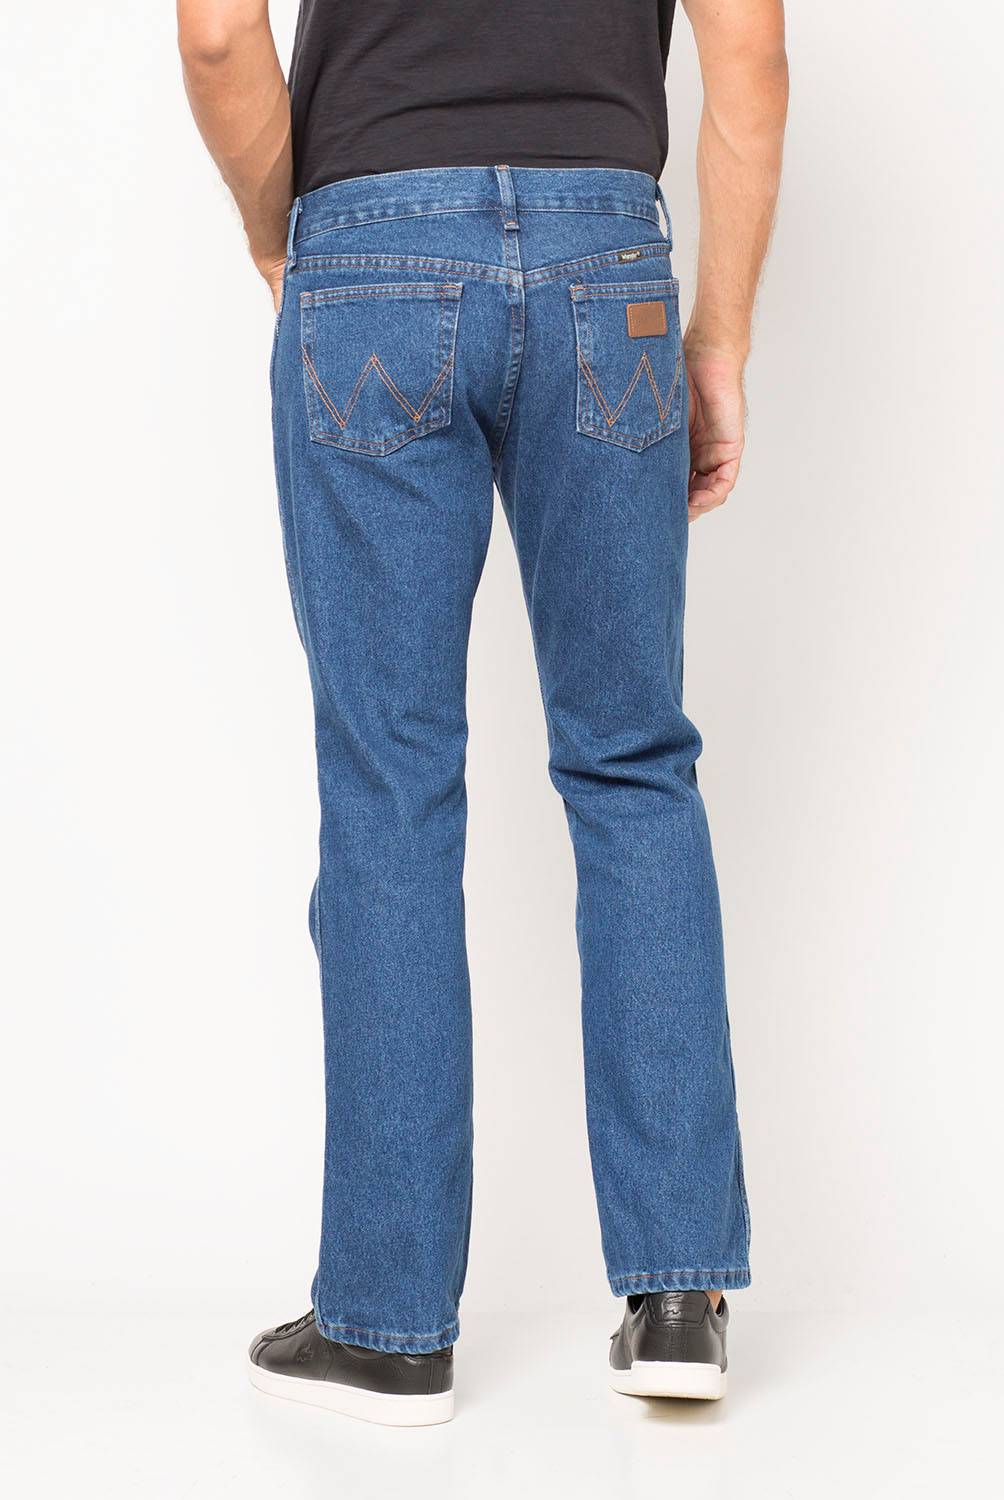 WRANGLER - Jeans Texas Regular Fit Hombre Wrangler